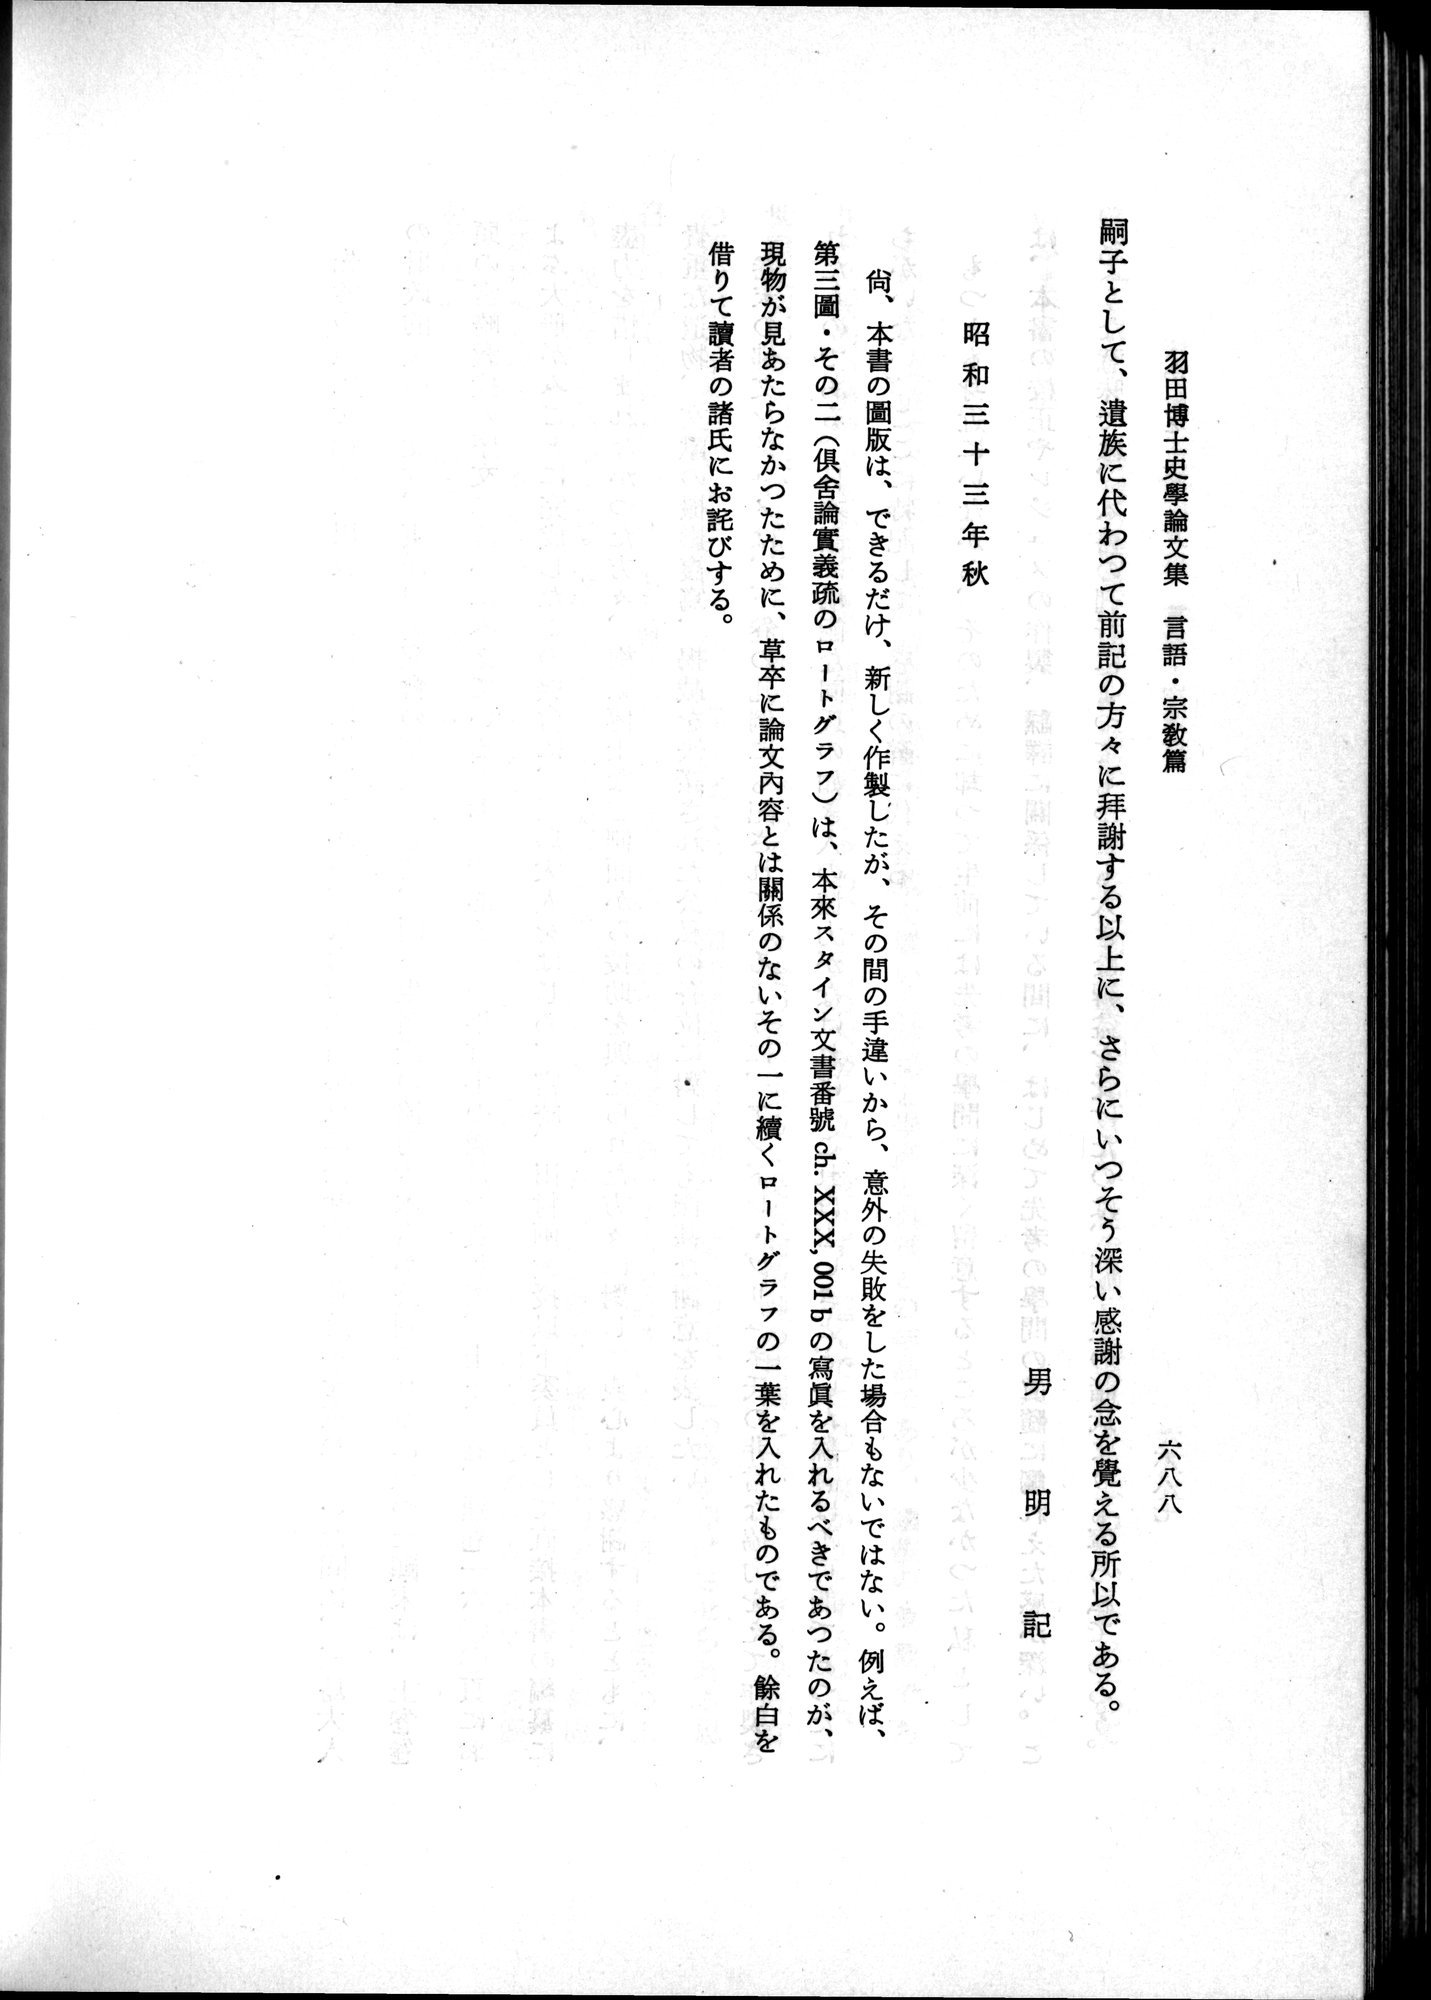 羽田博士史学論文集 : vol.2 / Page 752 (Grayscale High Resolution Image)